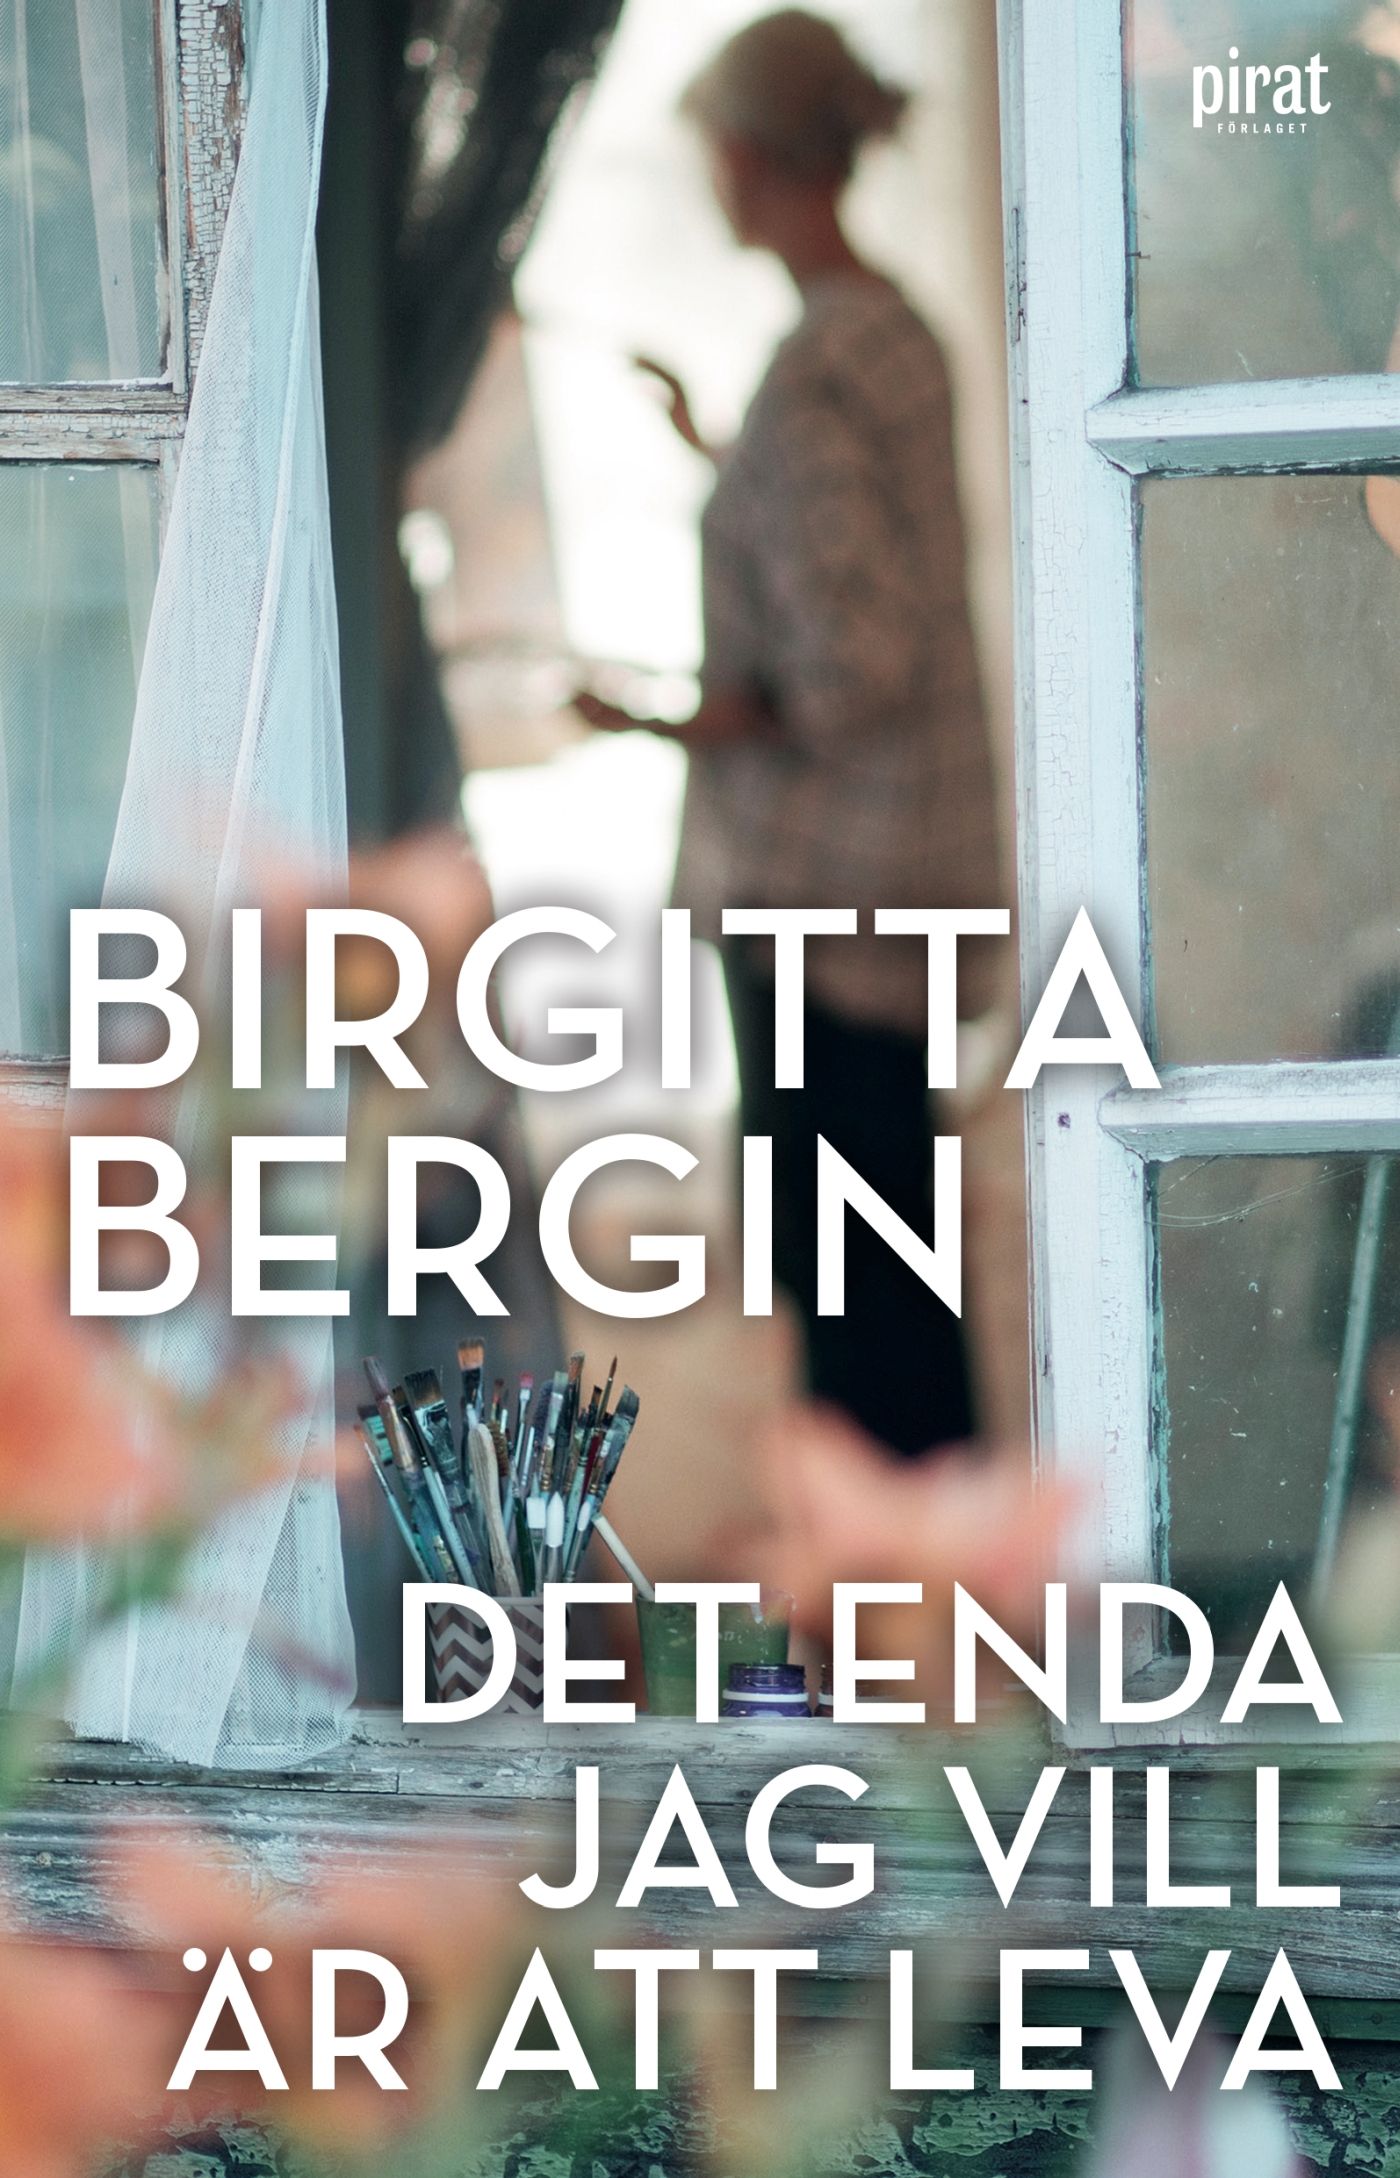 Det enda jag vill är att leva, e-bok av Birgitta Bergin